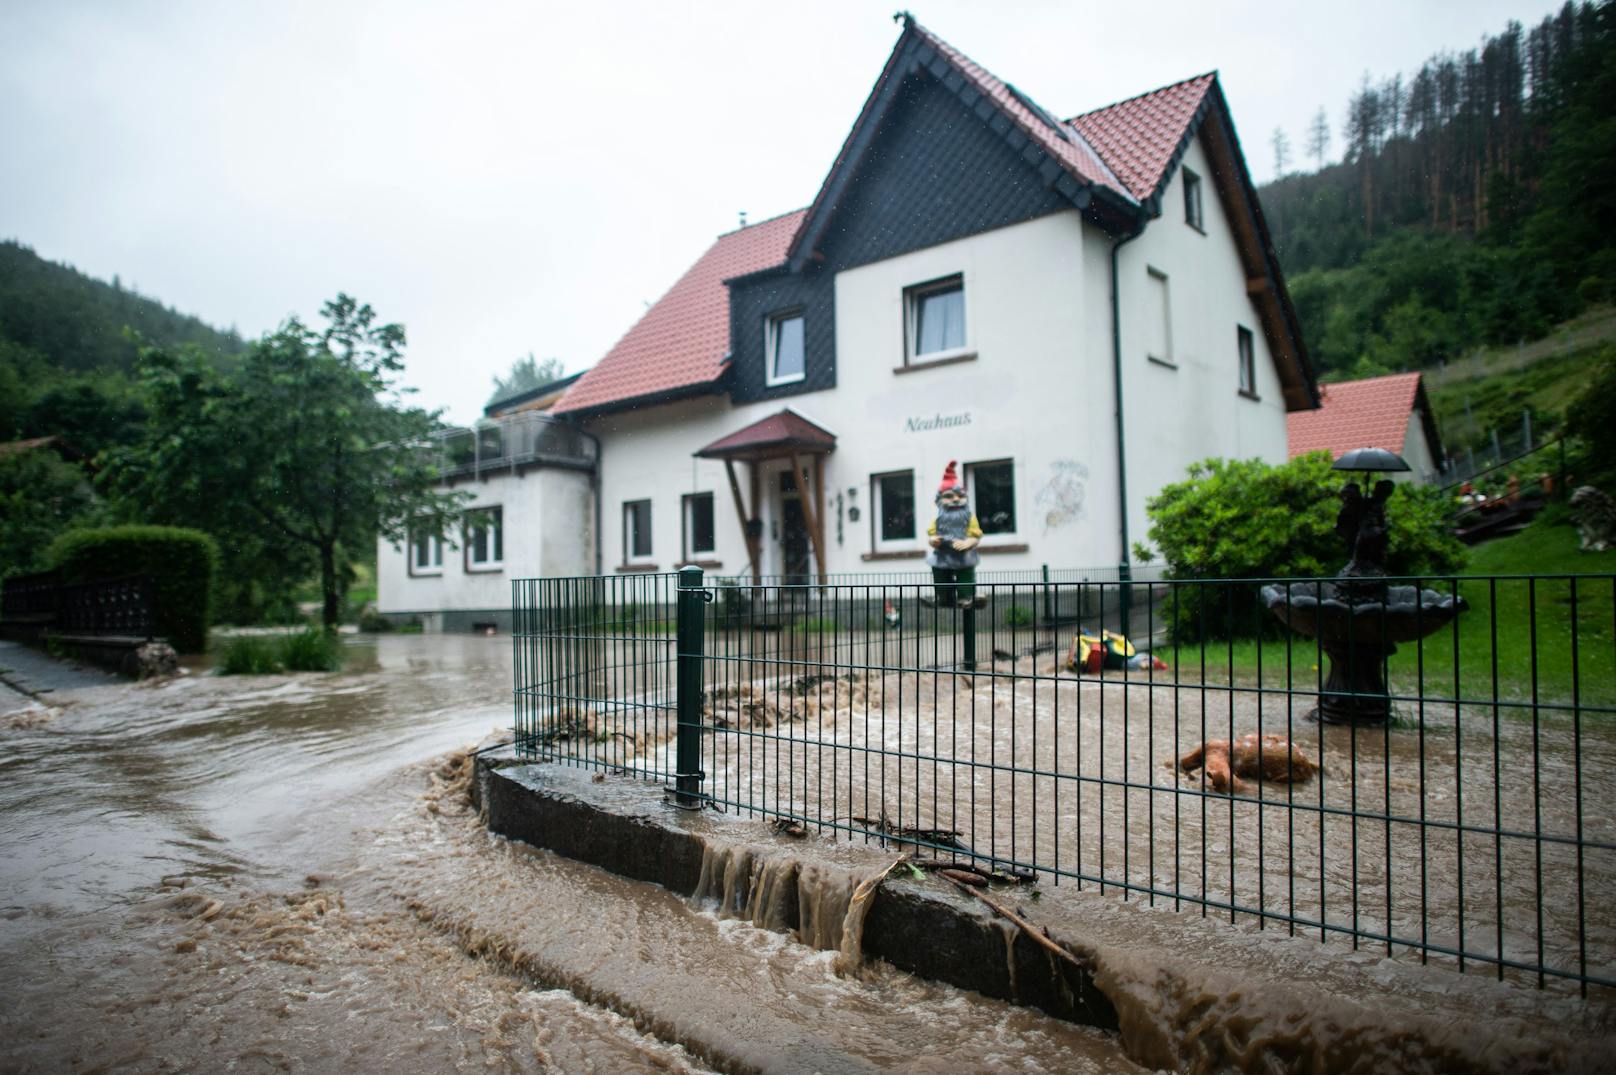 Heftige Starkregen-Unwetter fluteten am 14. Juli 2021 zahlreiche Gemeinden in Deutschlands westlichen Bundesländern Rheinland-Pfalz und Nordrhein-Westfalen.